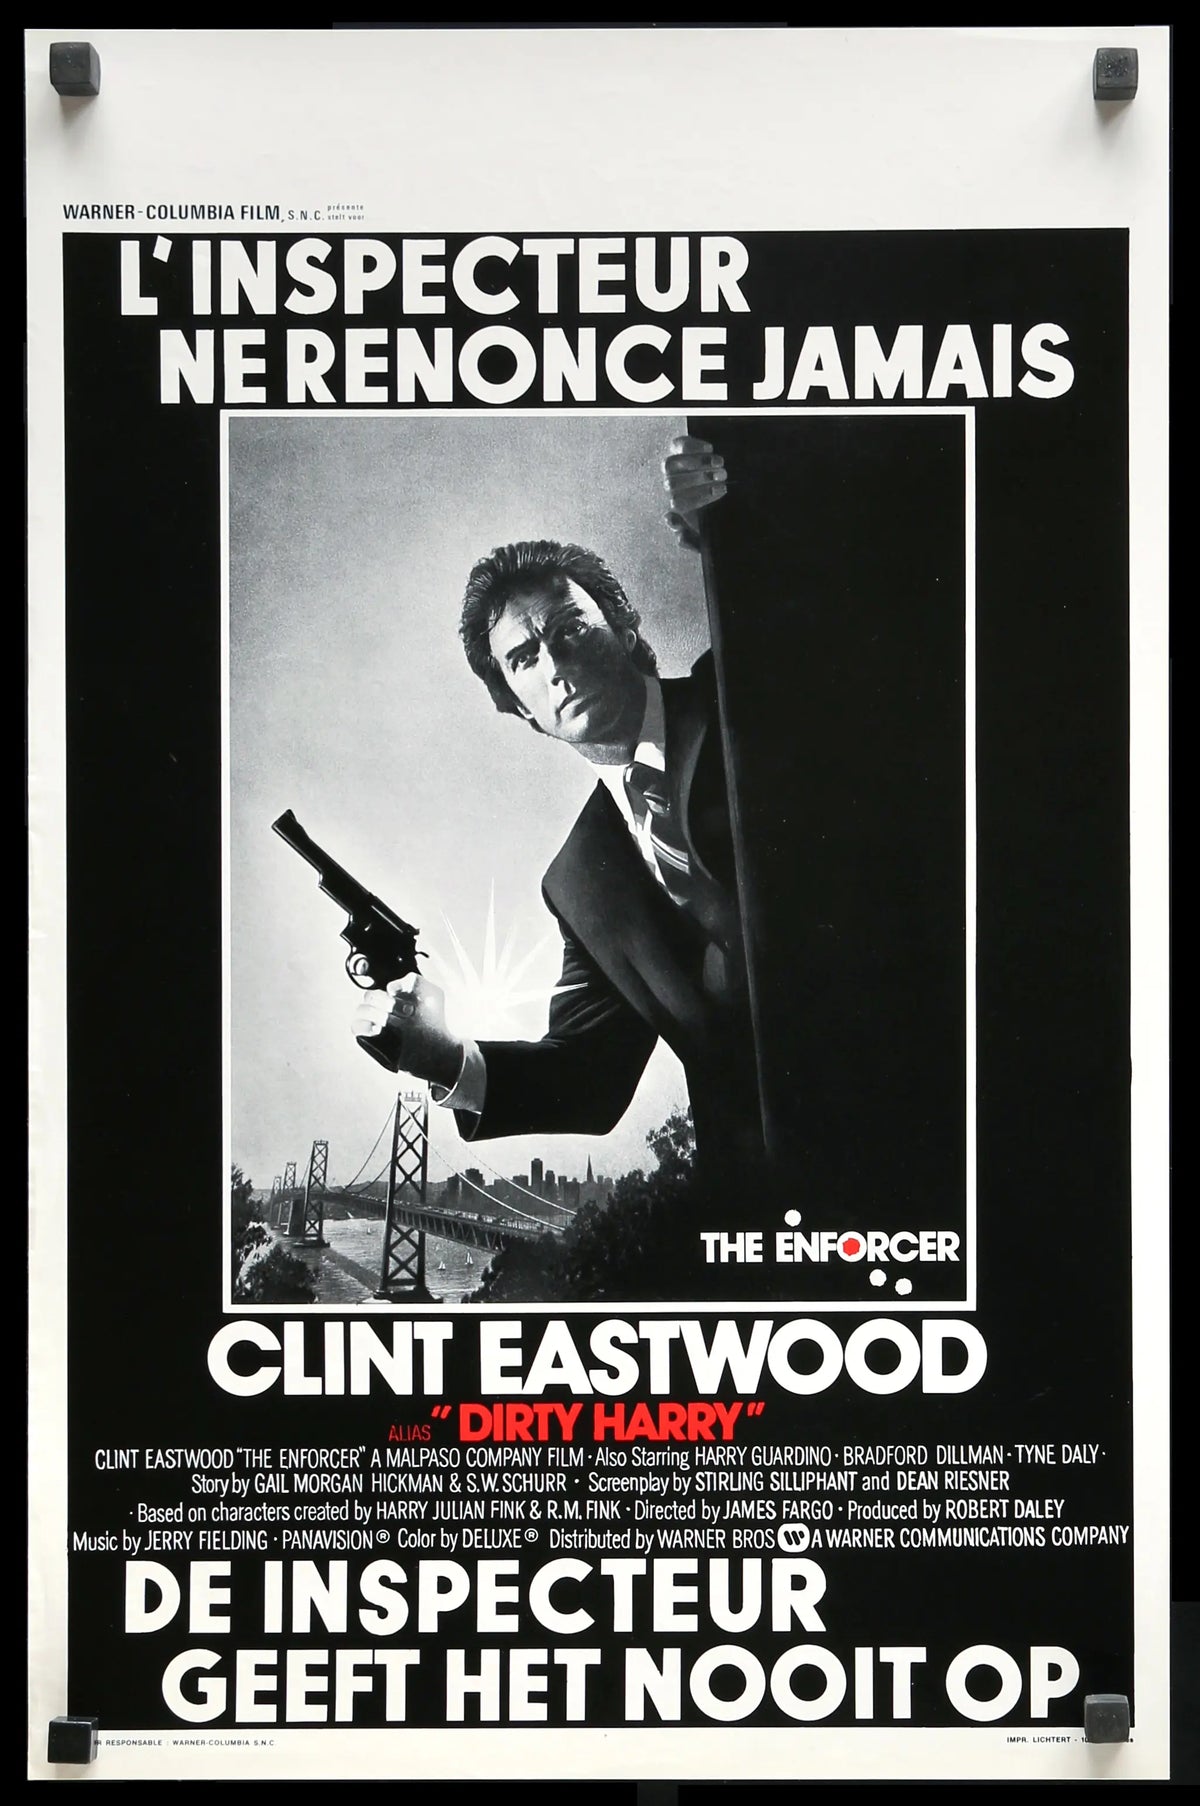 Enforcer (1976) original movie poster for sale at Original Film Art